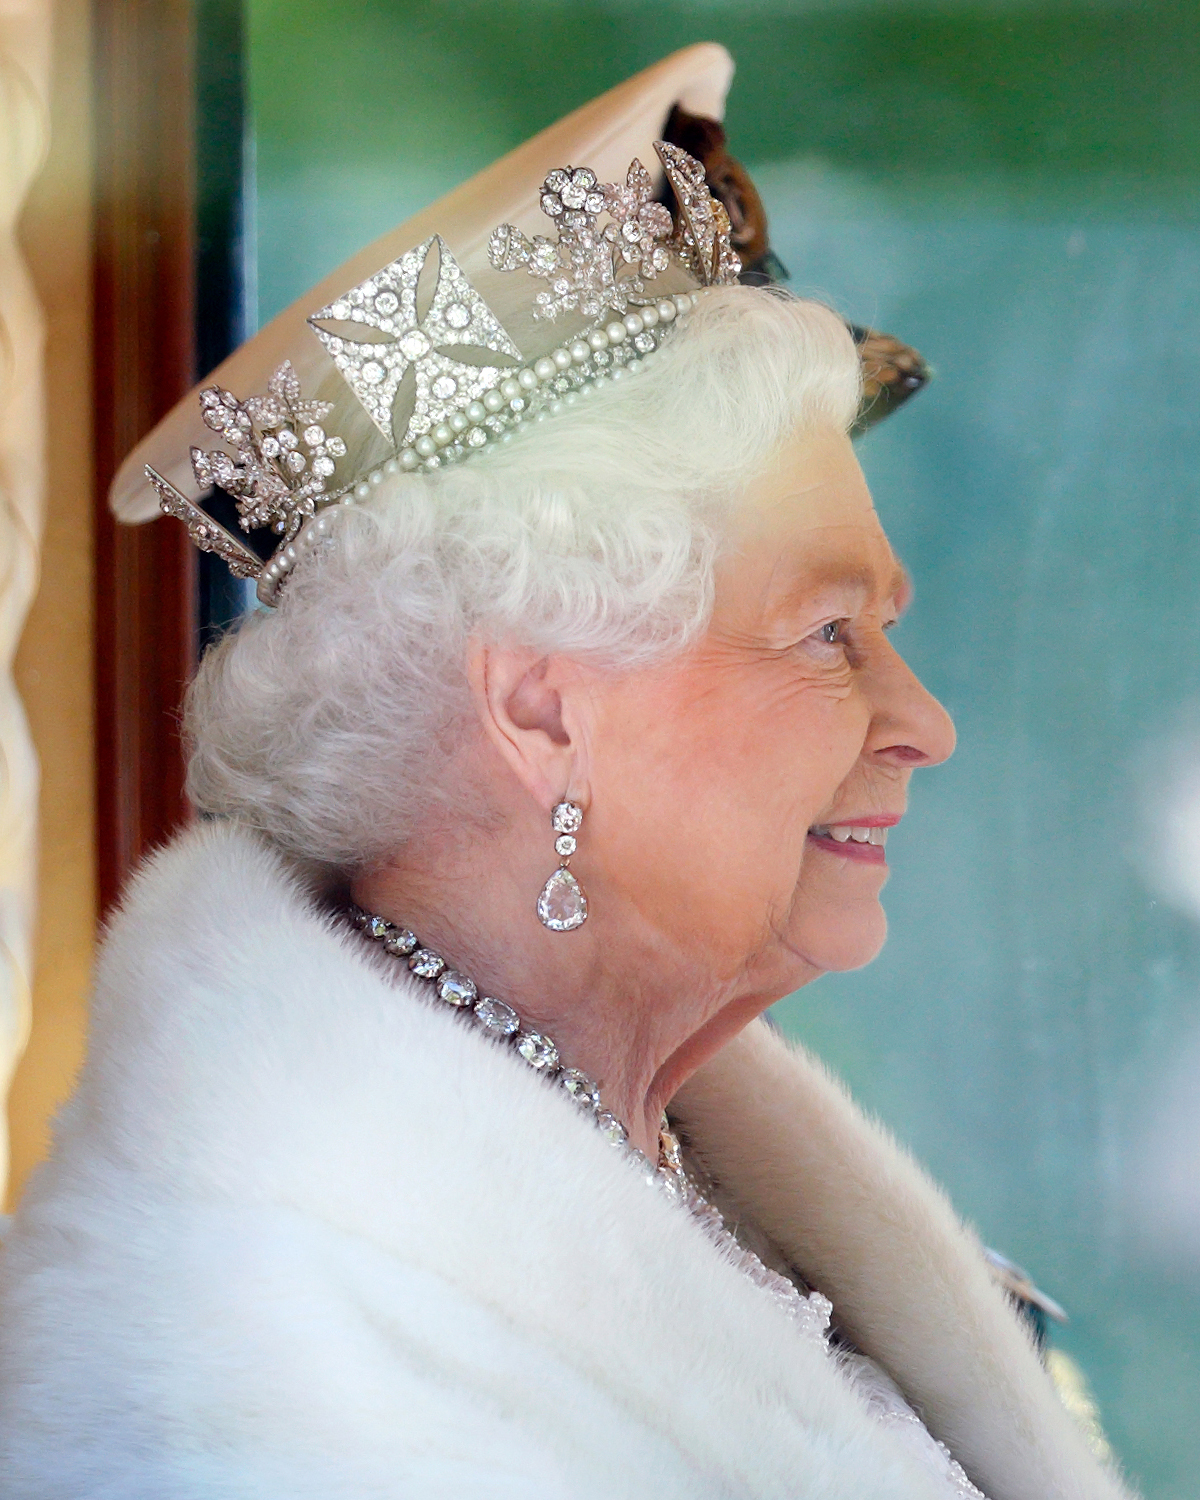 Queen's Platinum Jubilee diamonds jewels